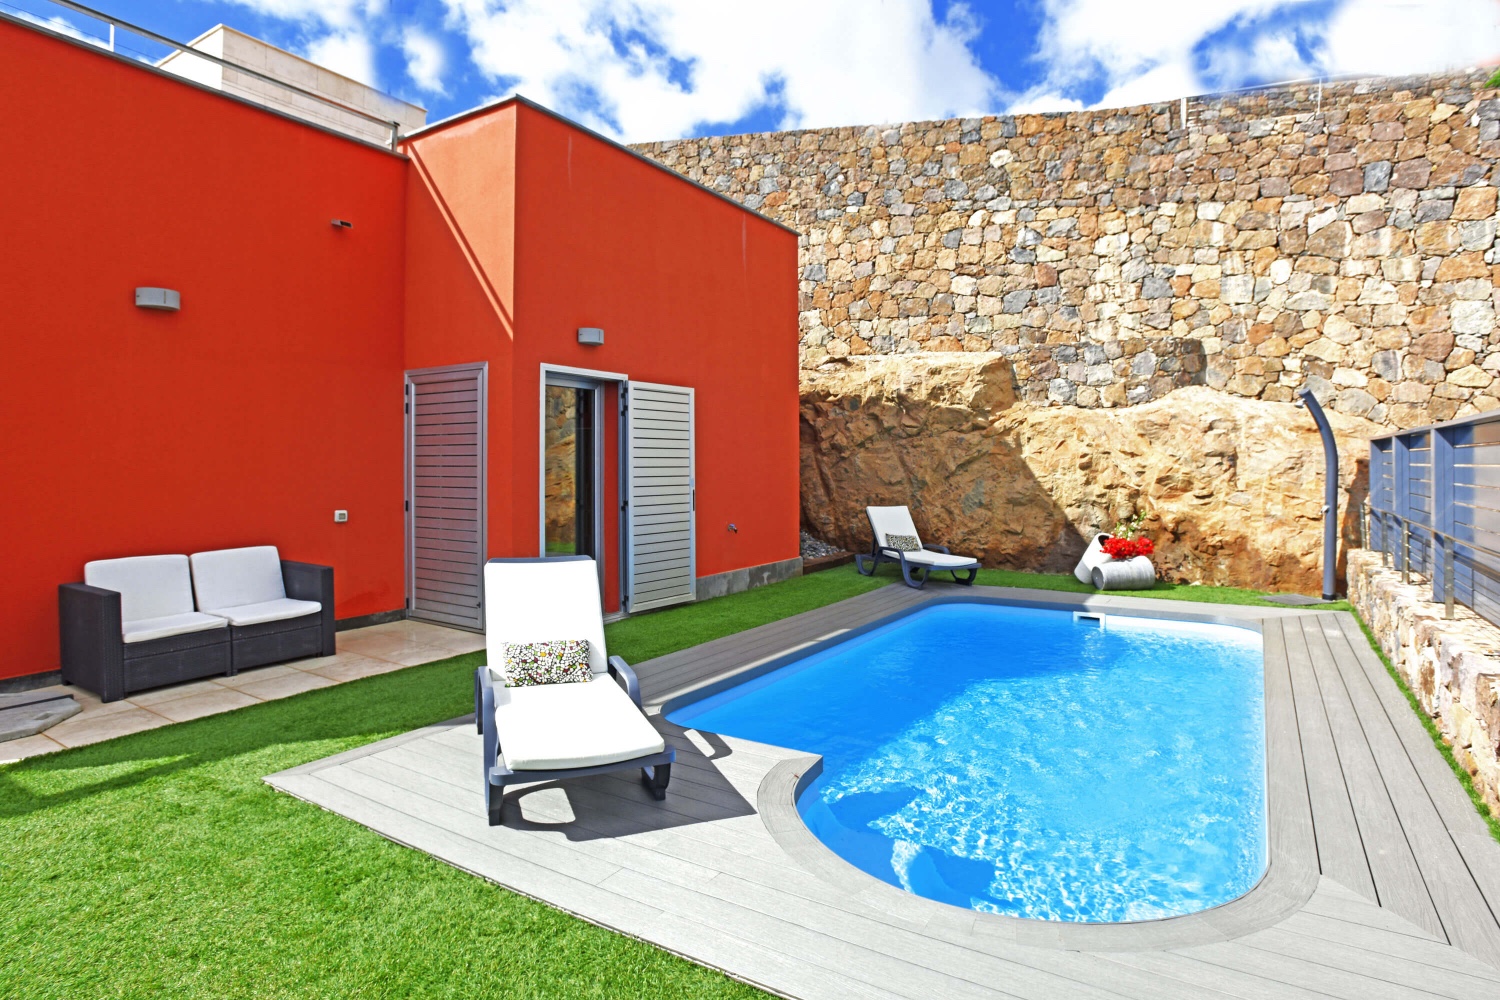 Bella casa a due piani con un piacevole spazio esterno con piscina privata riscaldata, ampia terrazza e mobili da giardino